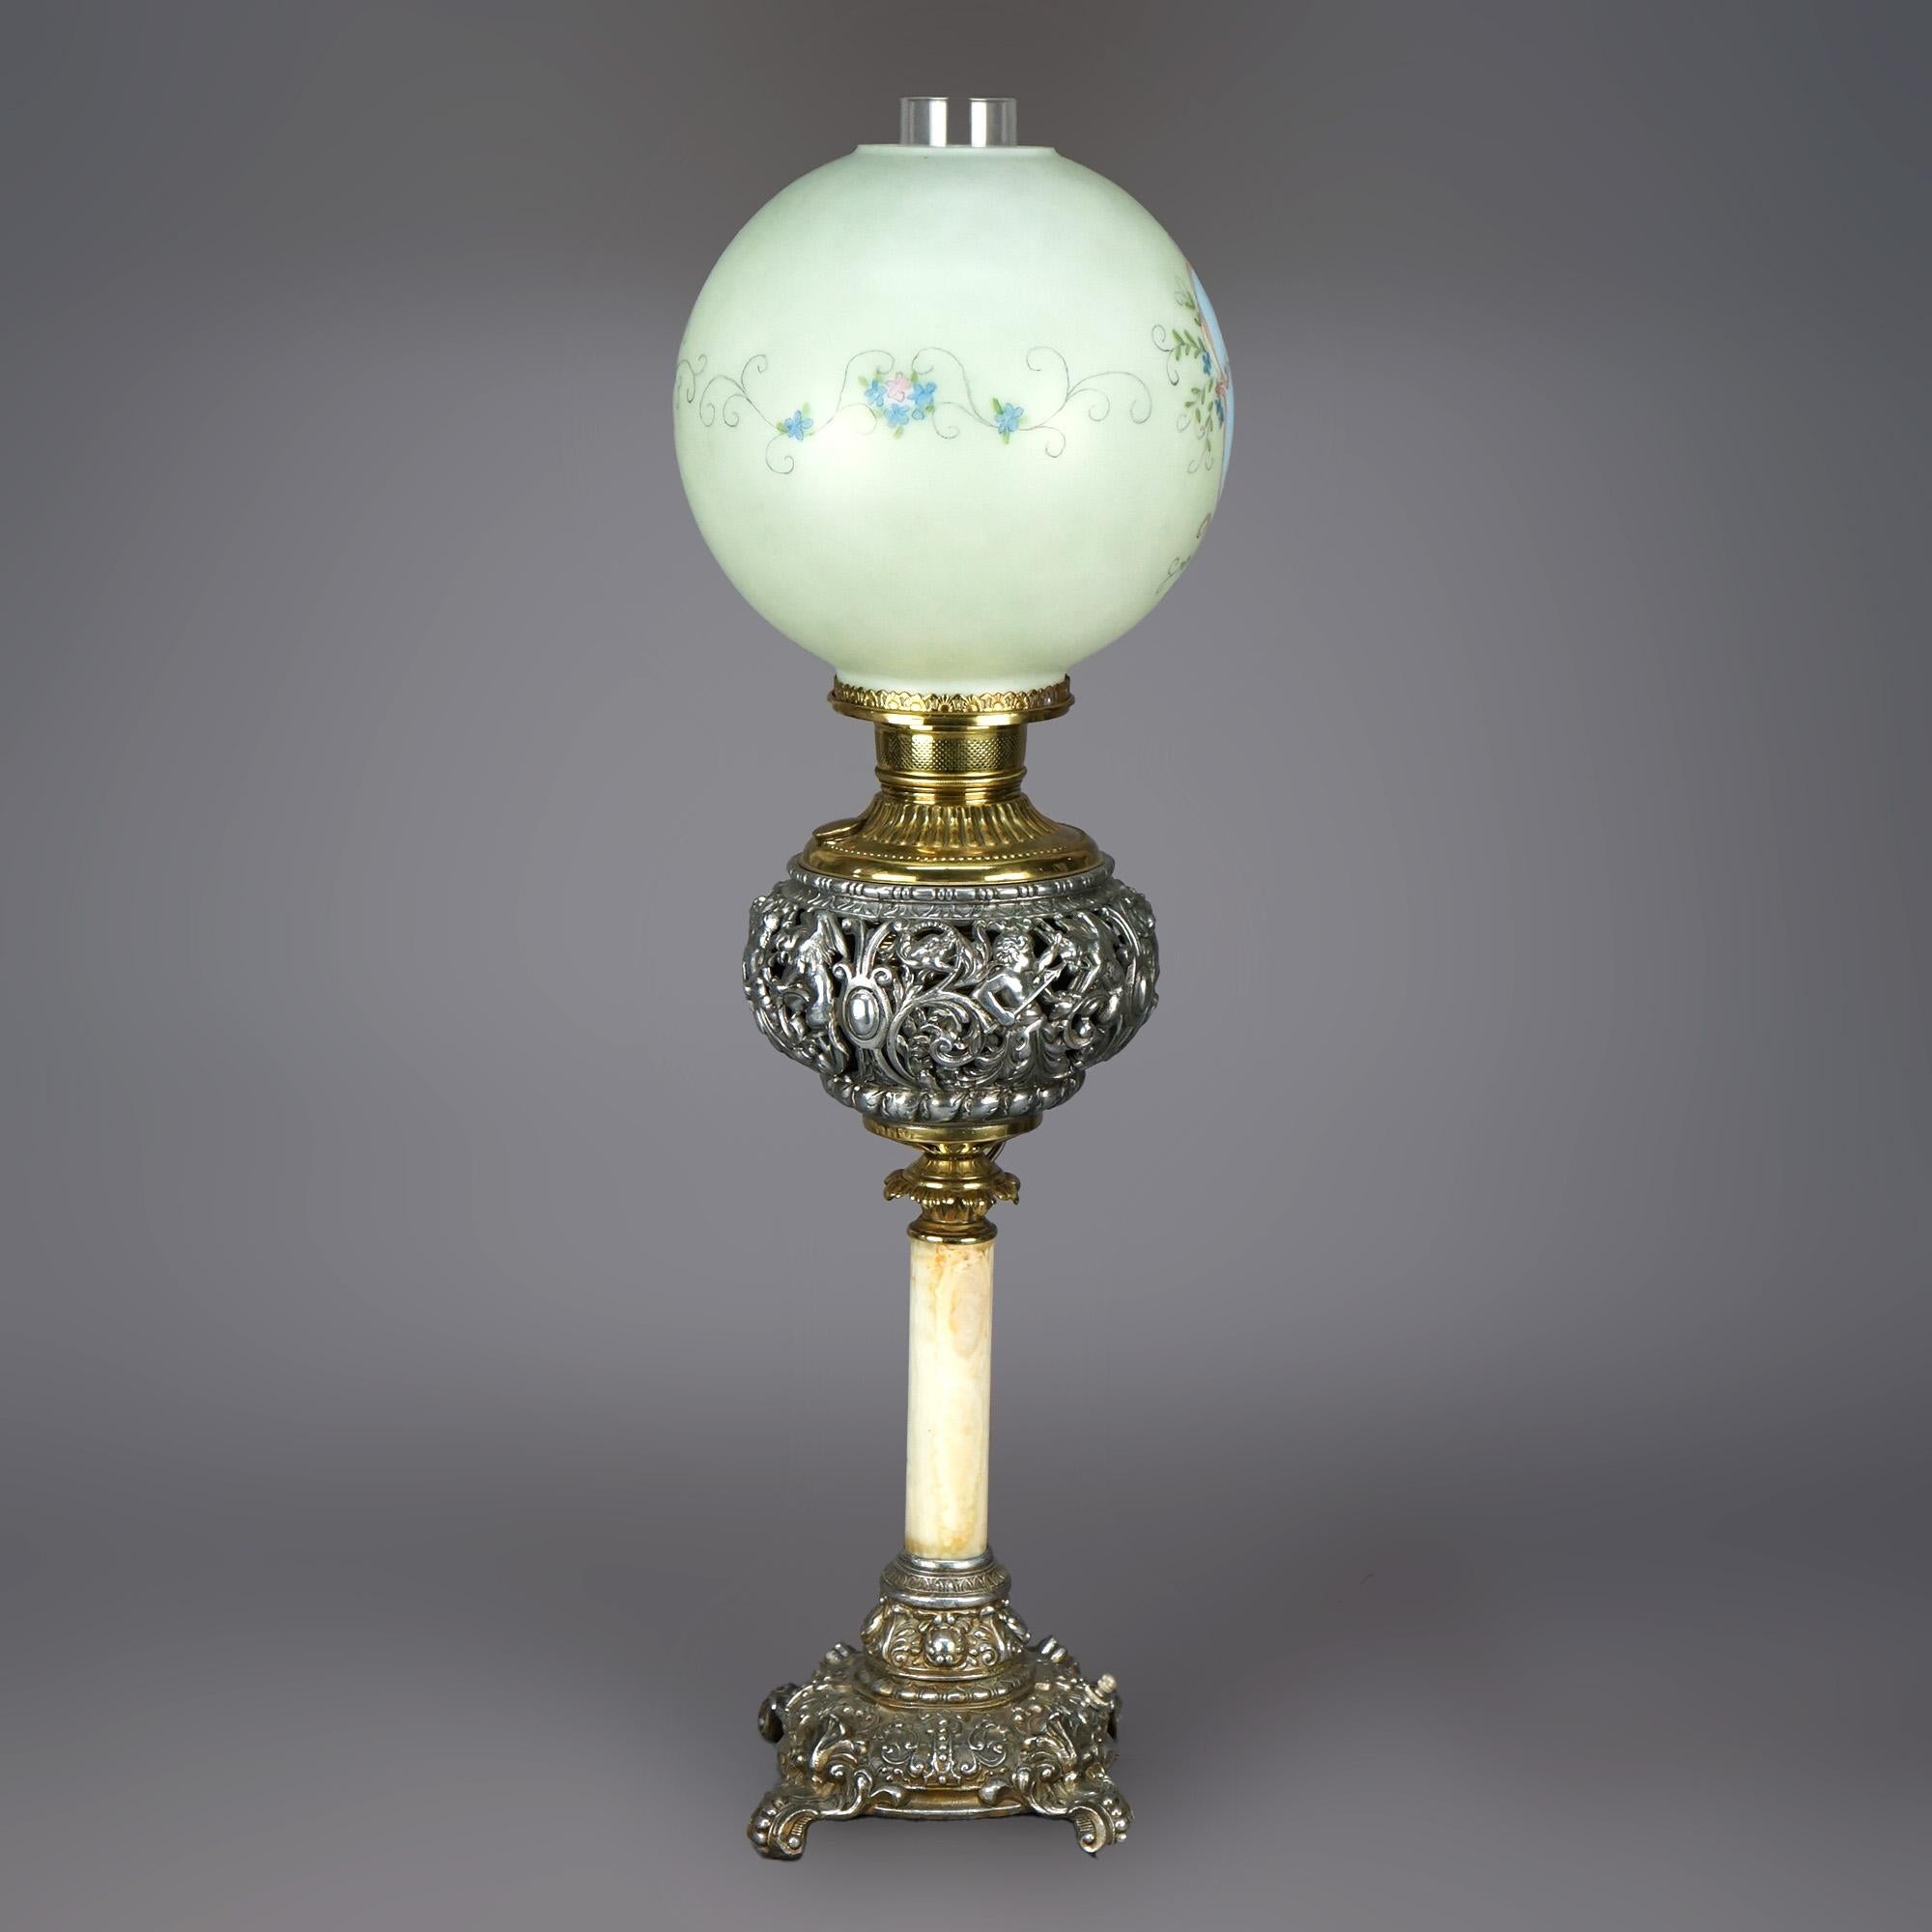 Une lampe de salon victorienne antique offre un abat-jour en verre avec une réserve de chérubins et des éléments floraux peints à la main, sur une base avec une fontaine argentée et dorée percée de putti et de dragon, reposant sur une seule colonne